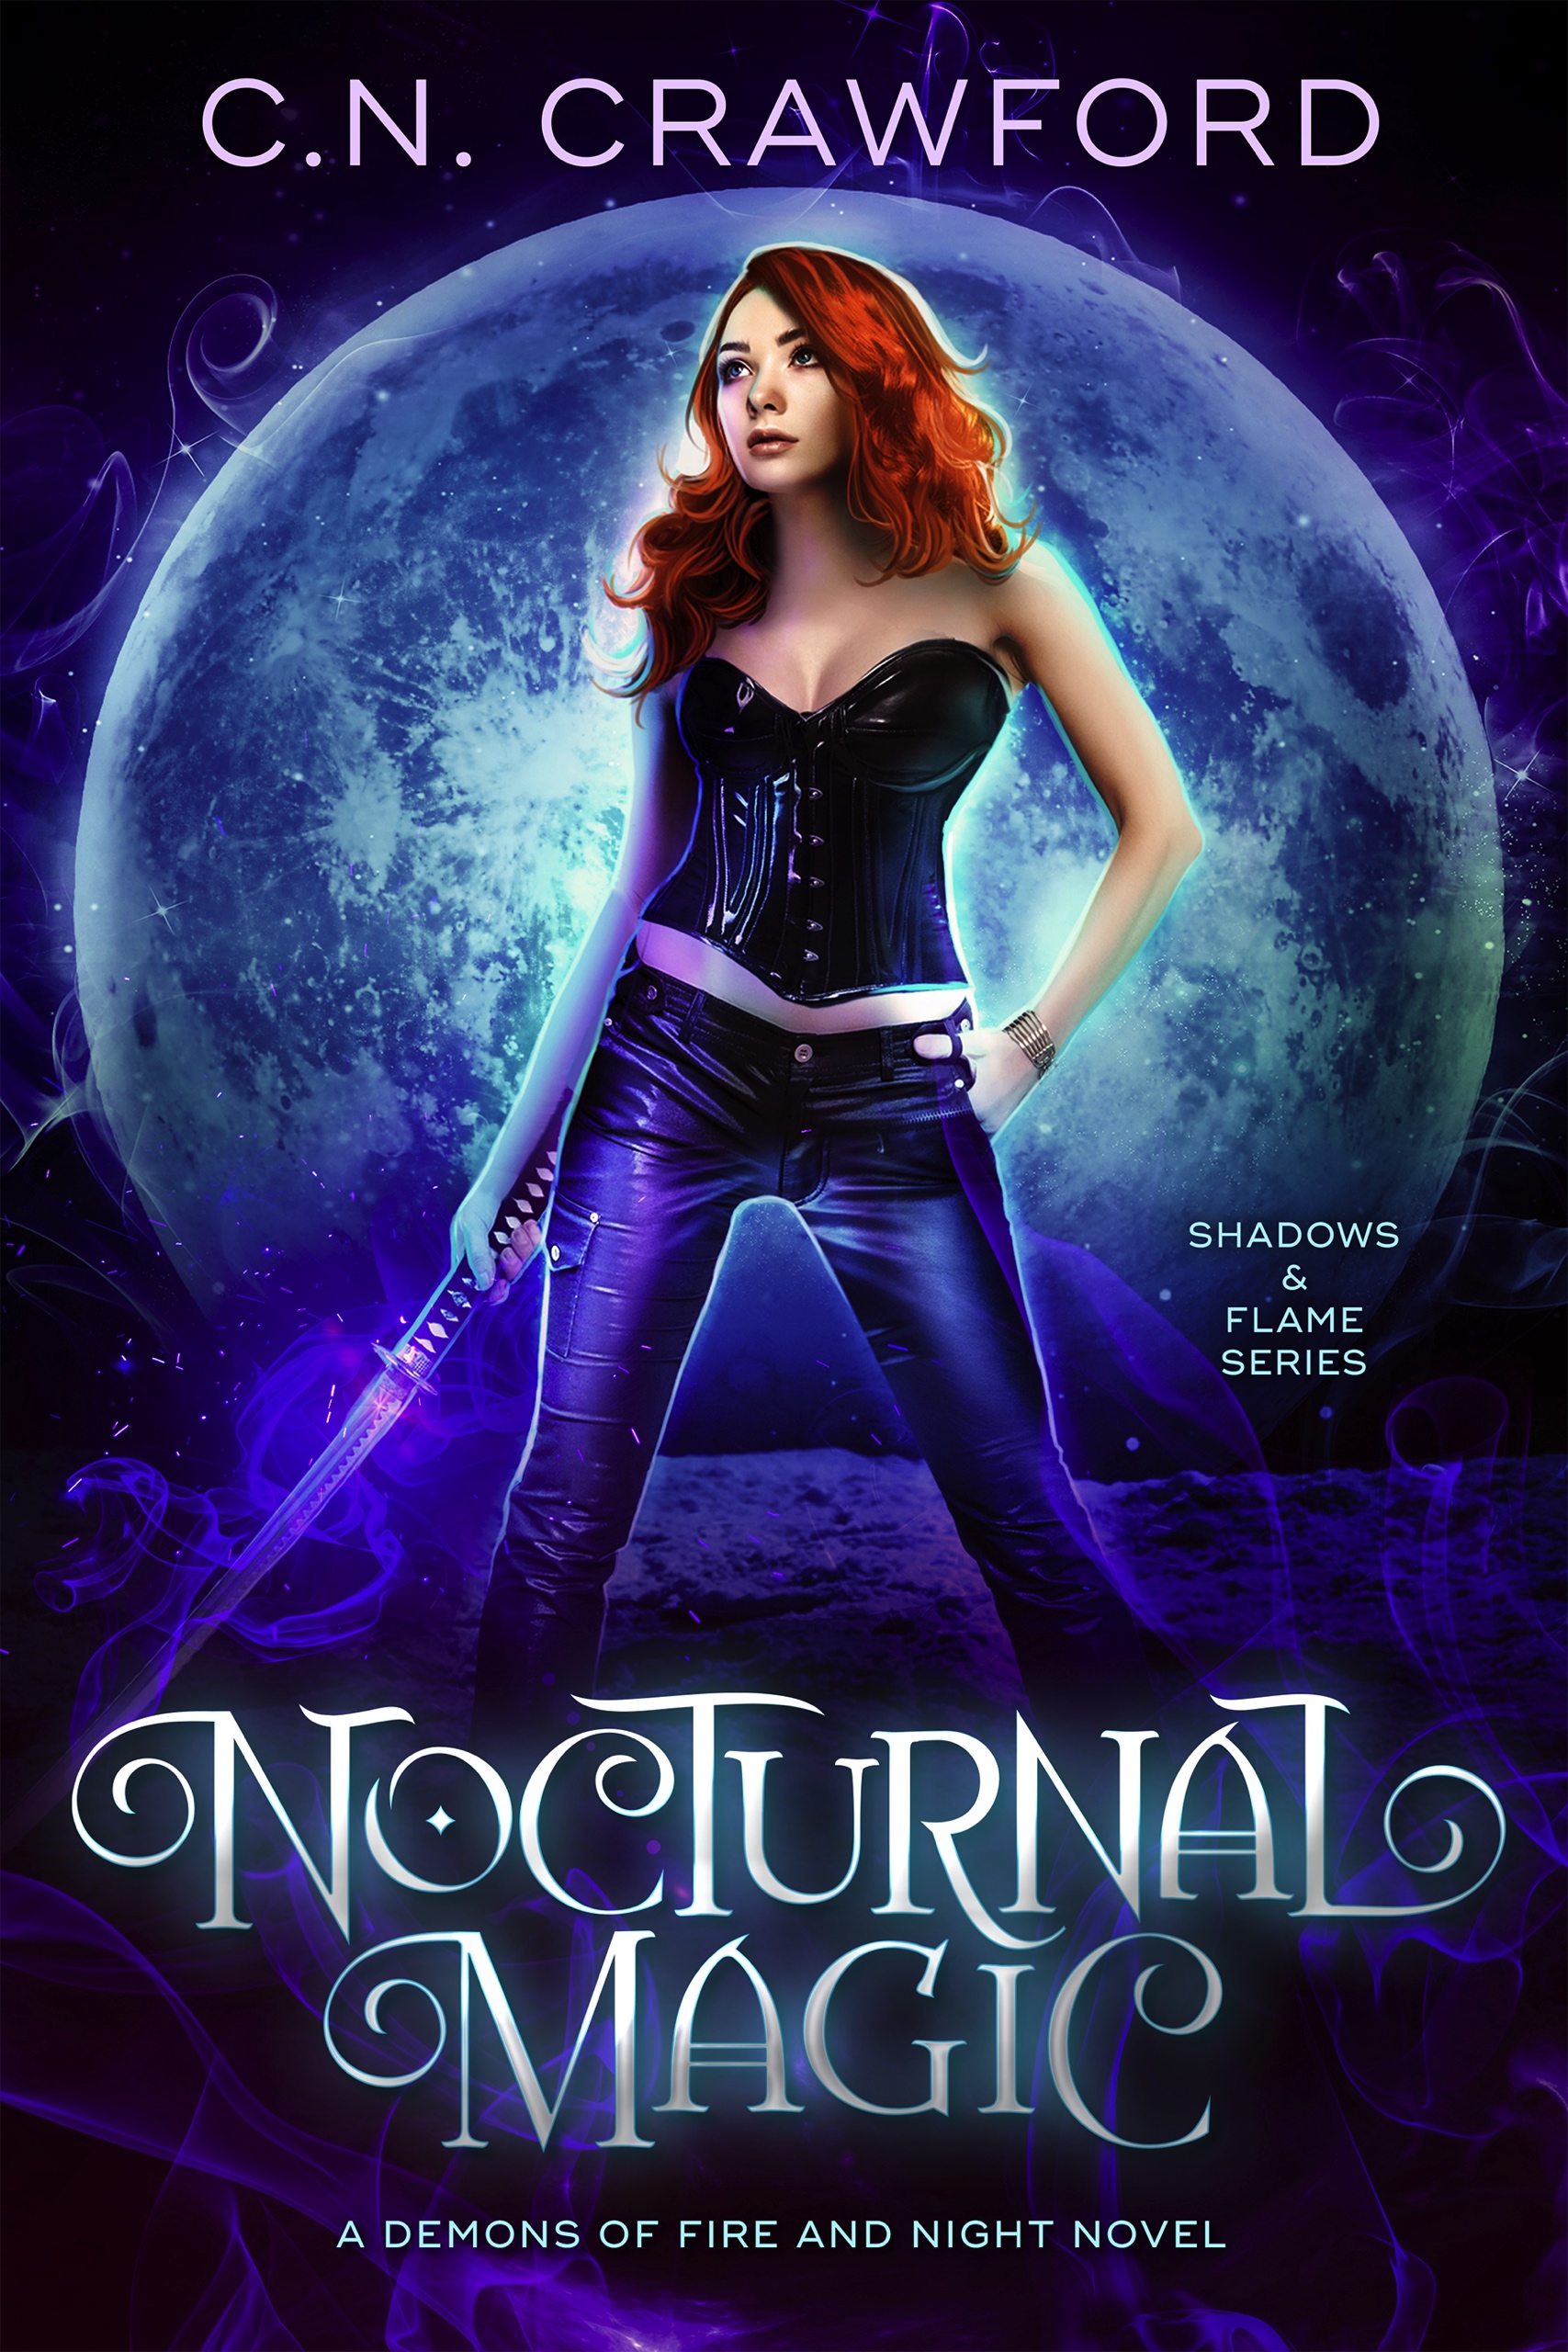 Book 2: Nocturnal Magic